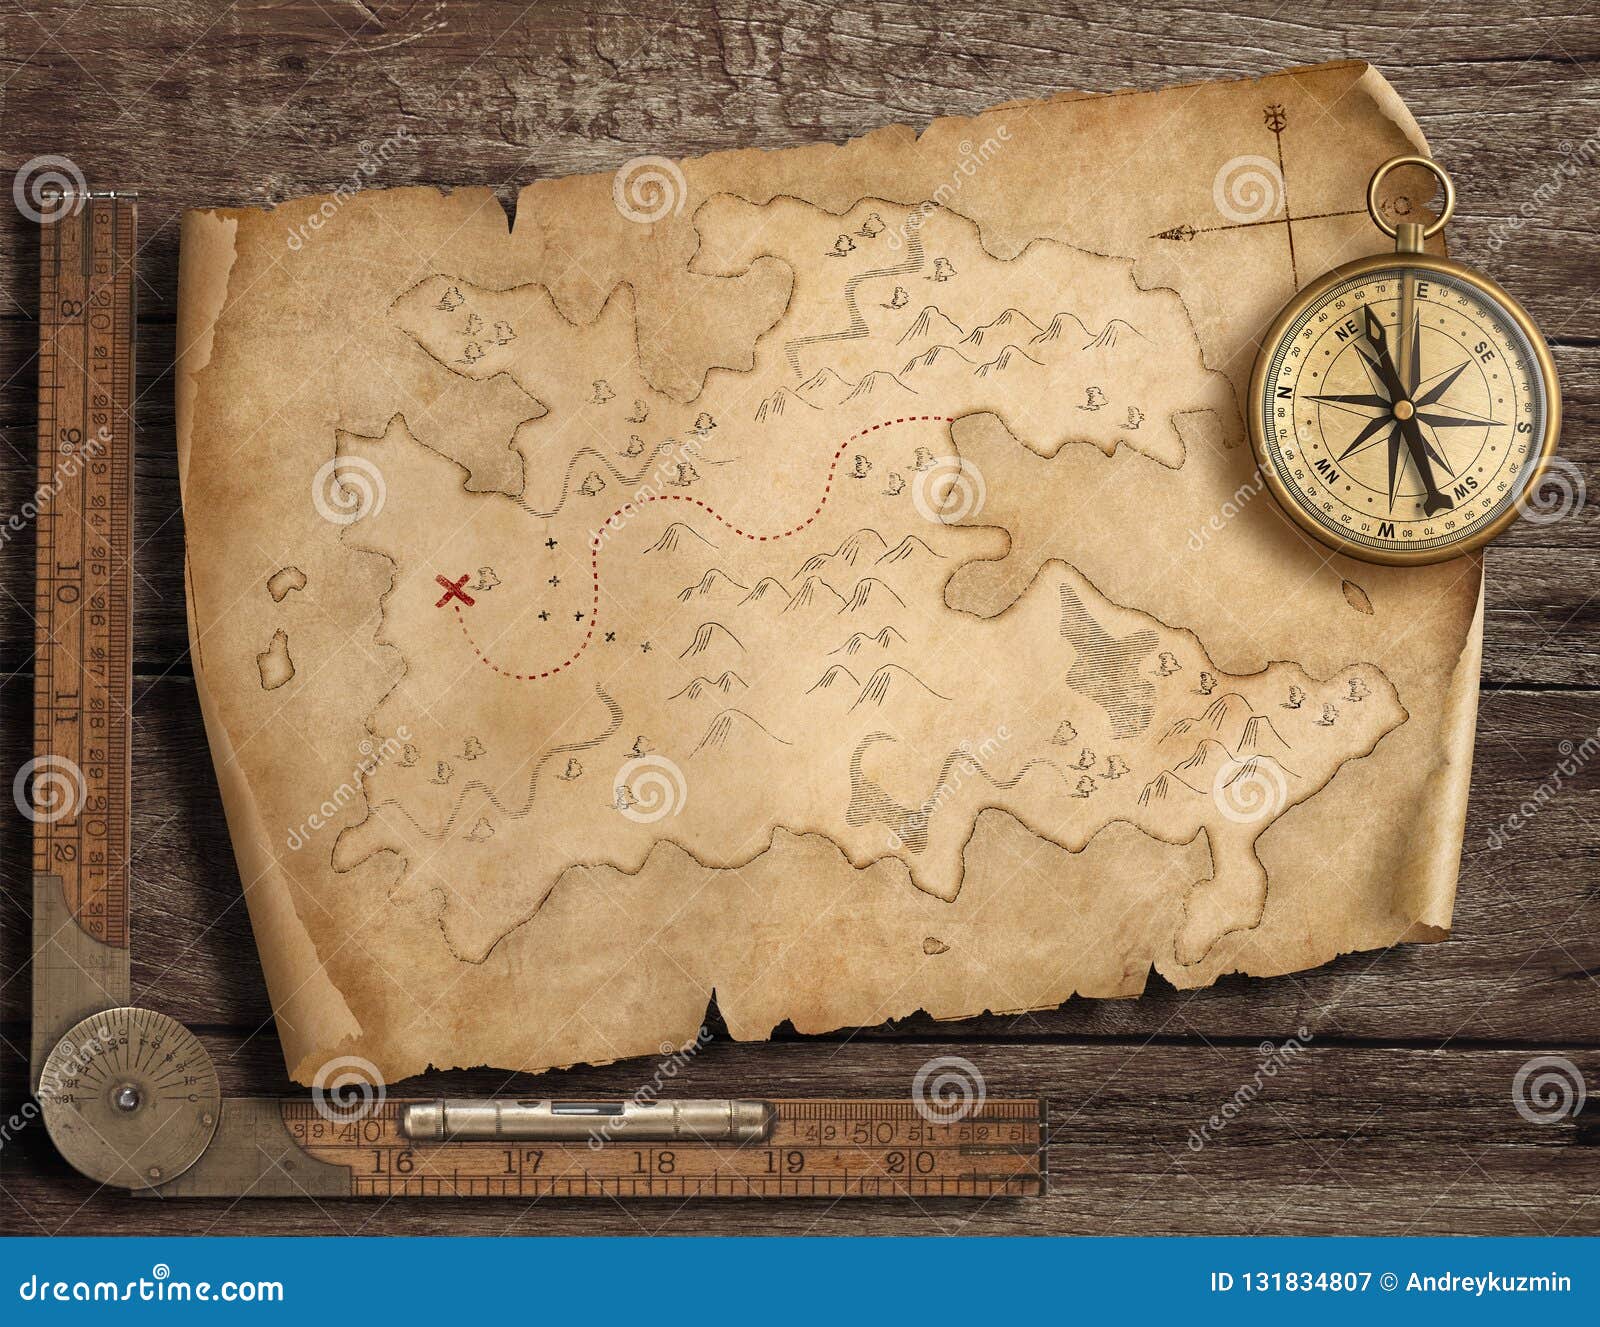 Карта лежит на столе. Старинная карта сокровищ. Пиратская карта. Старинная карта клада. Старые пиратские карты.